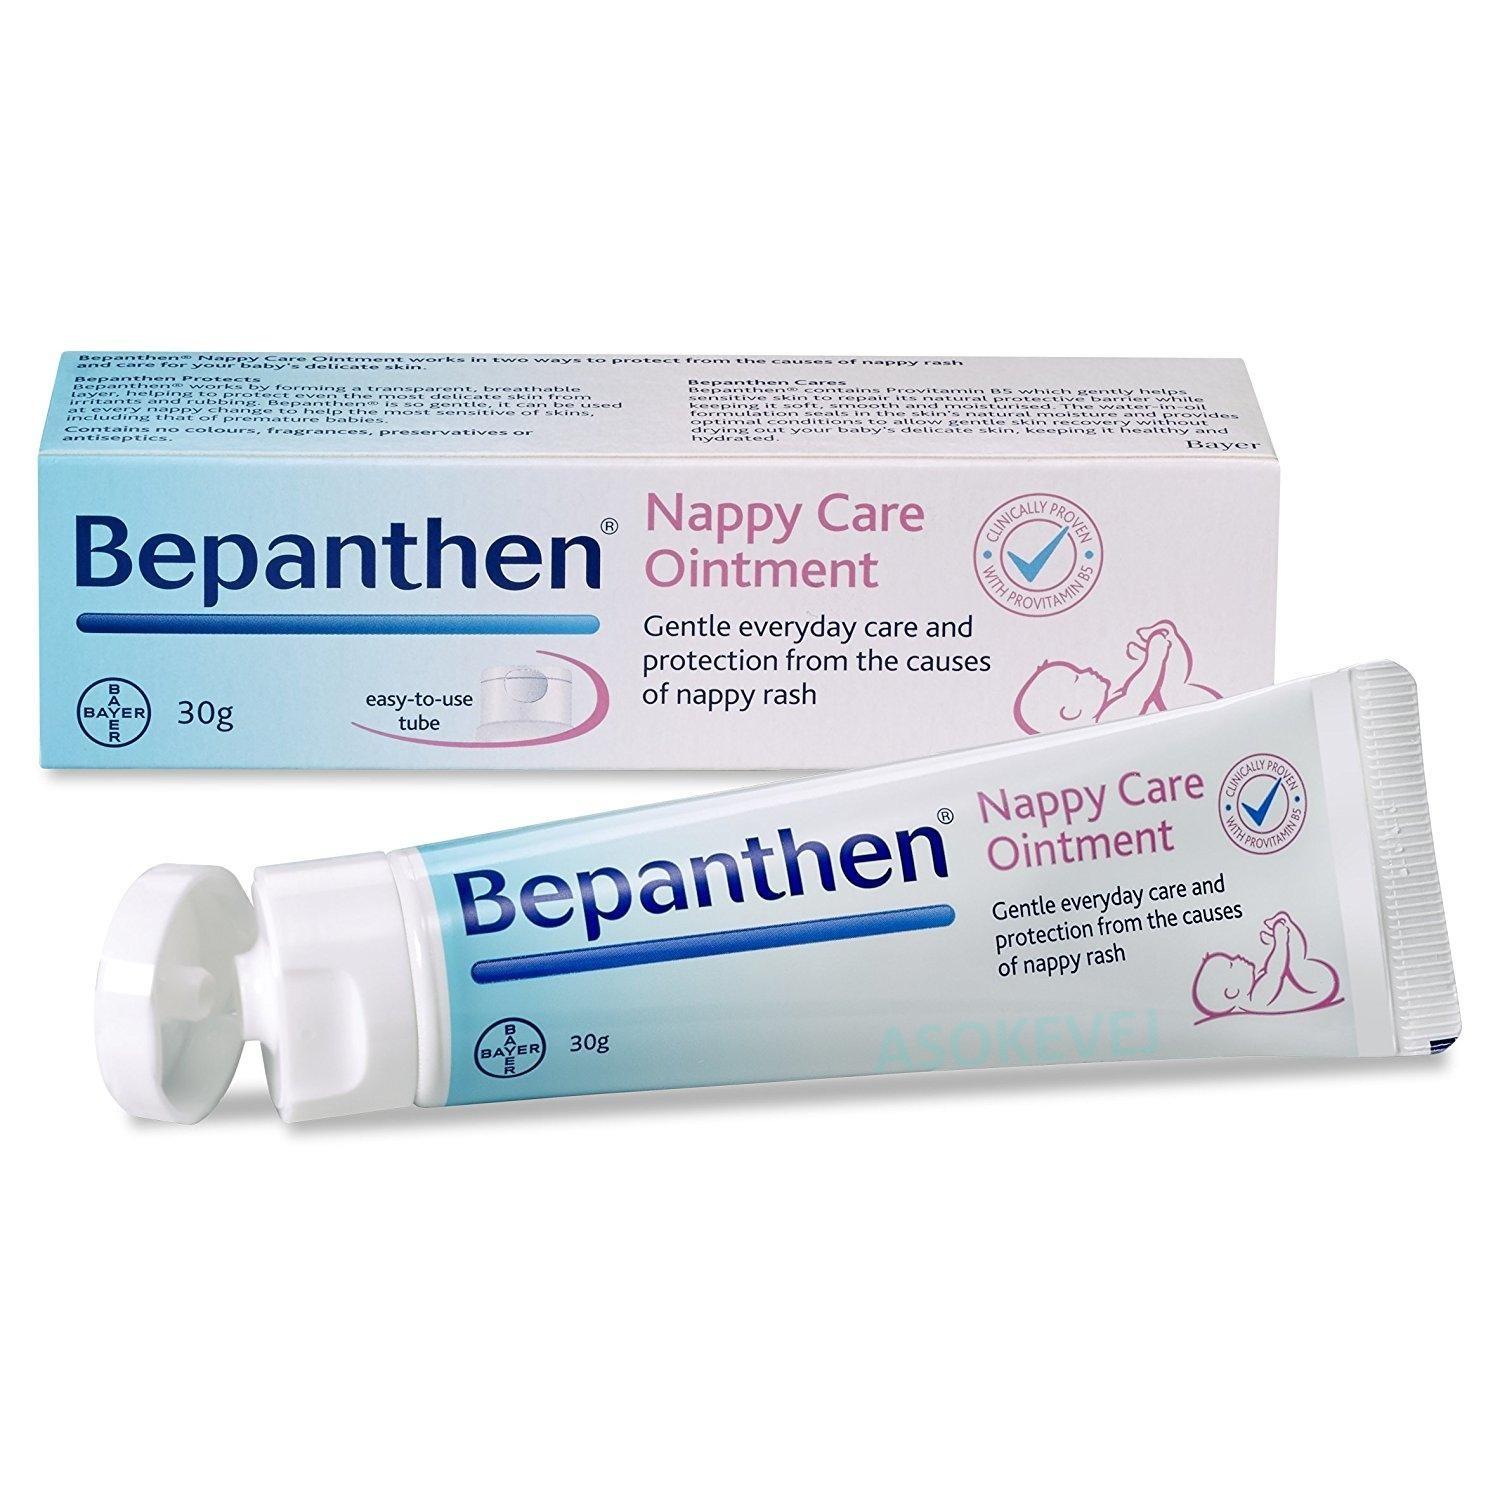 Bepanthen บีแพนเธน ออยเมนท์ 30g ปกป้องดูแลผิวใต้ผ้าอ้อมสำหรับเด็ก